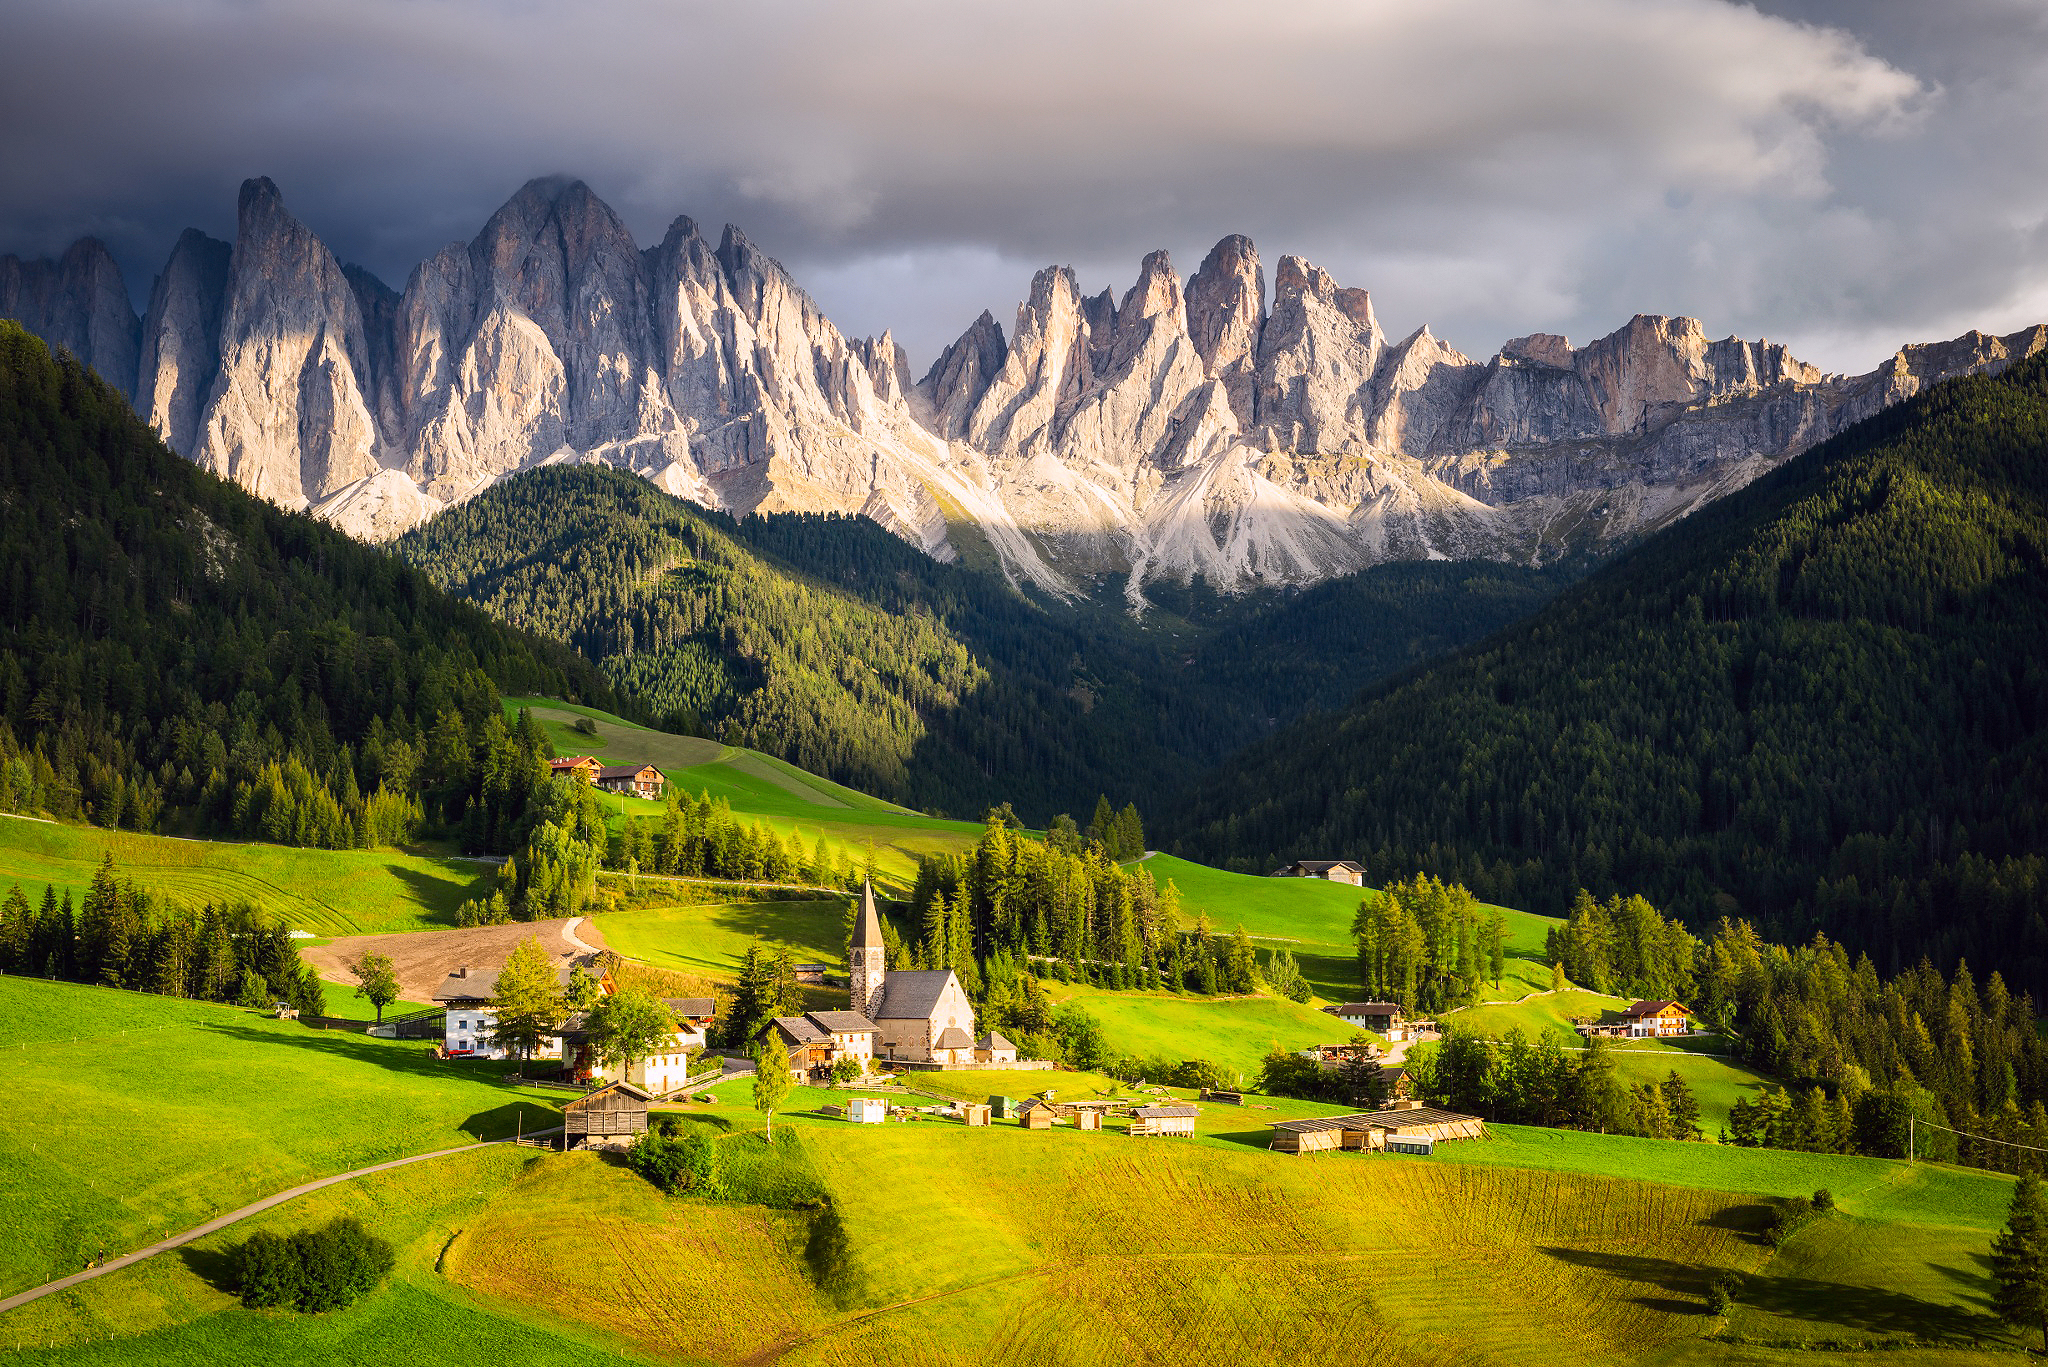 Village in the Italian Alps by Jason Hatfield